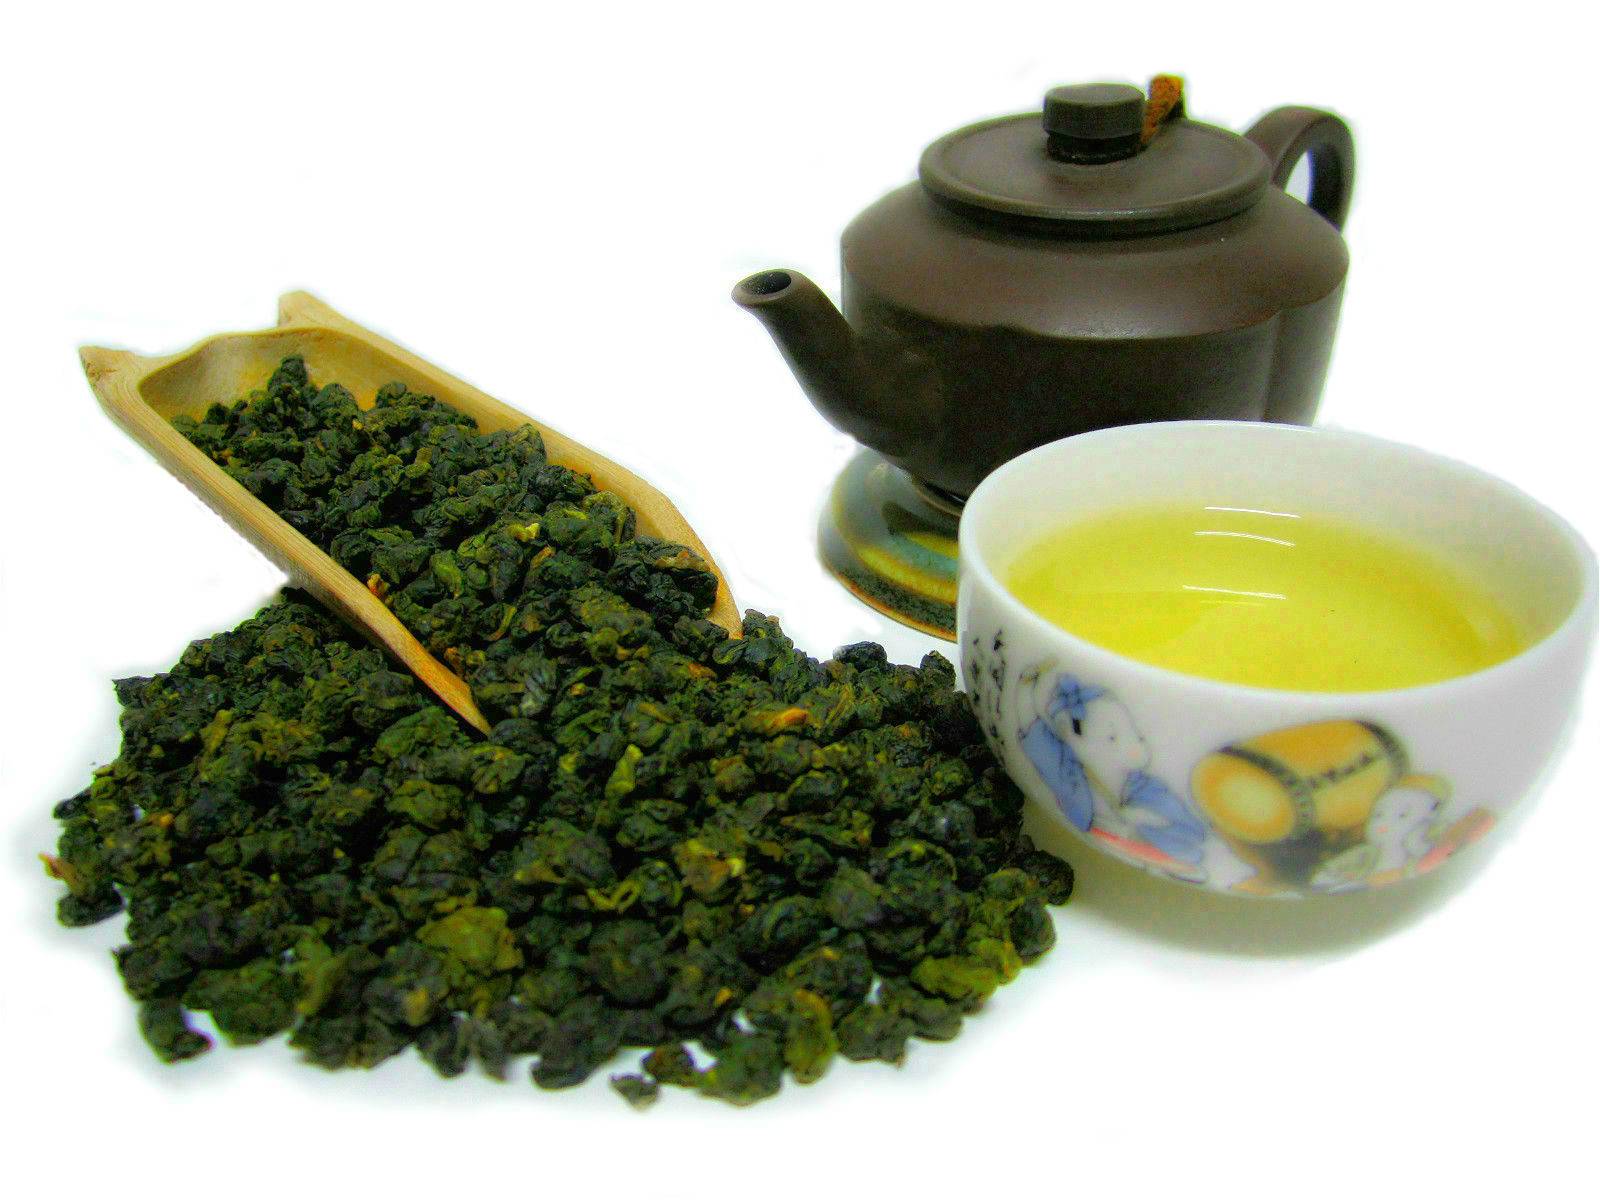 Чай улун что это, полезные свойства, польза и вред, как заваривать и противопоказания